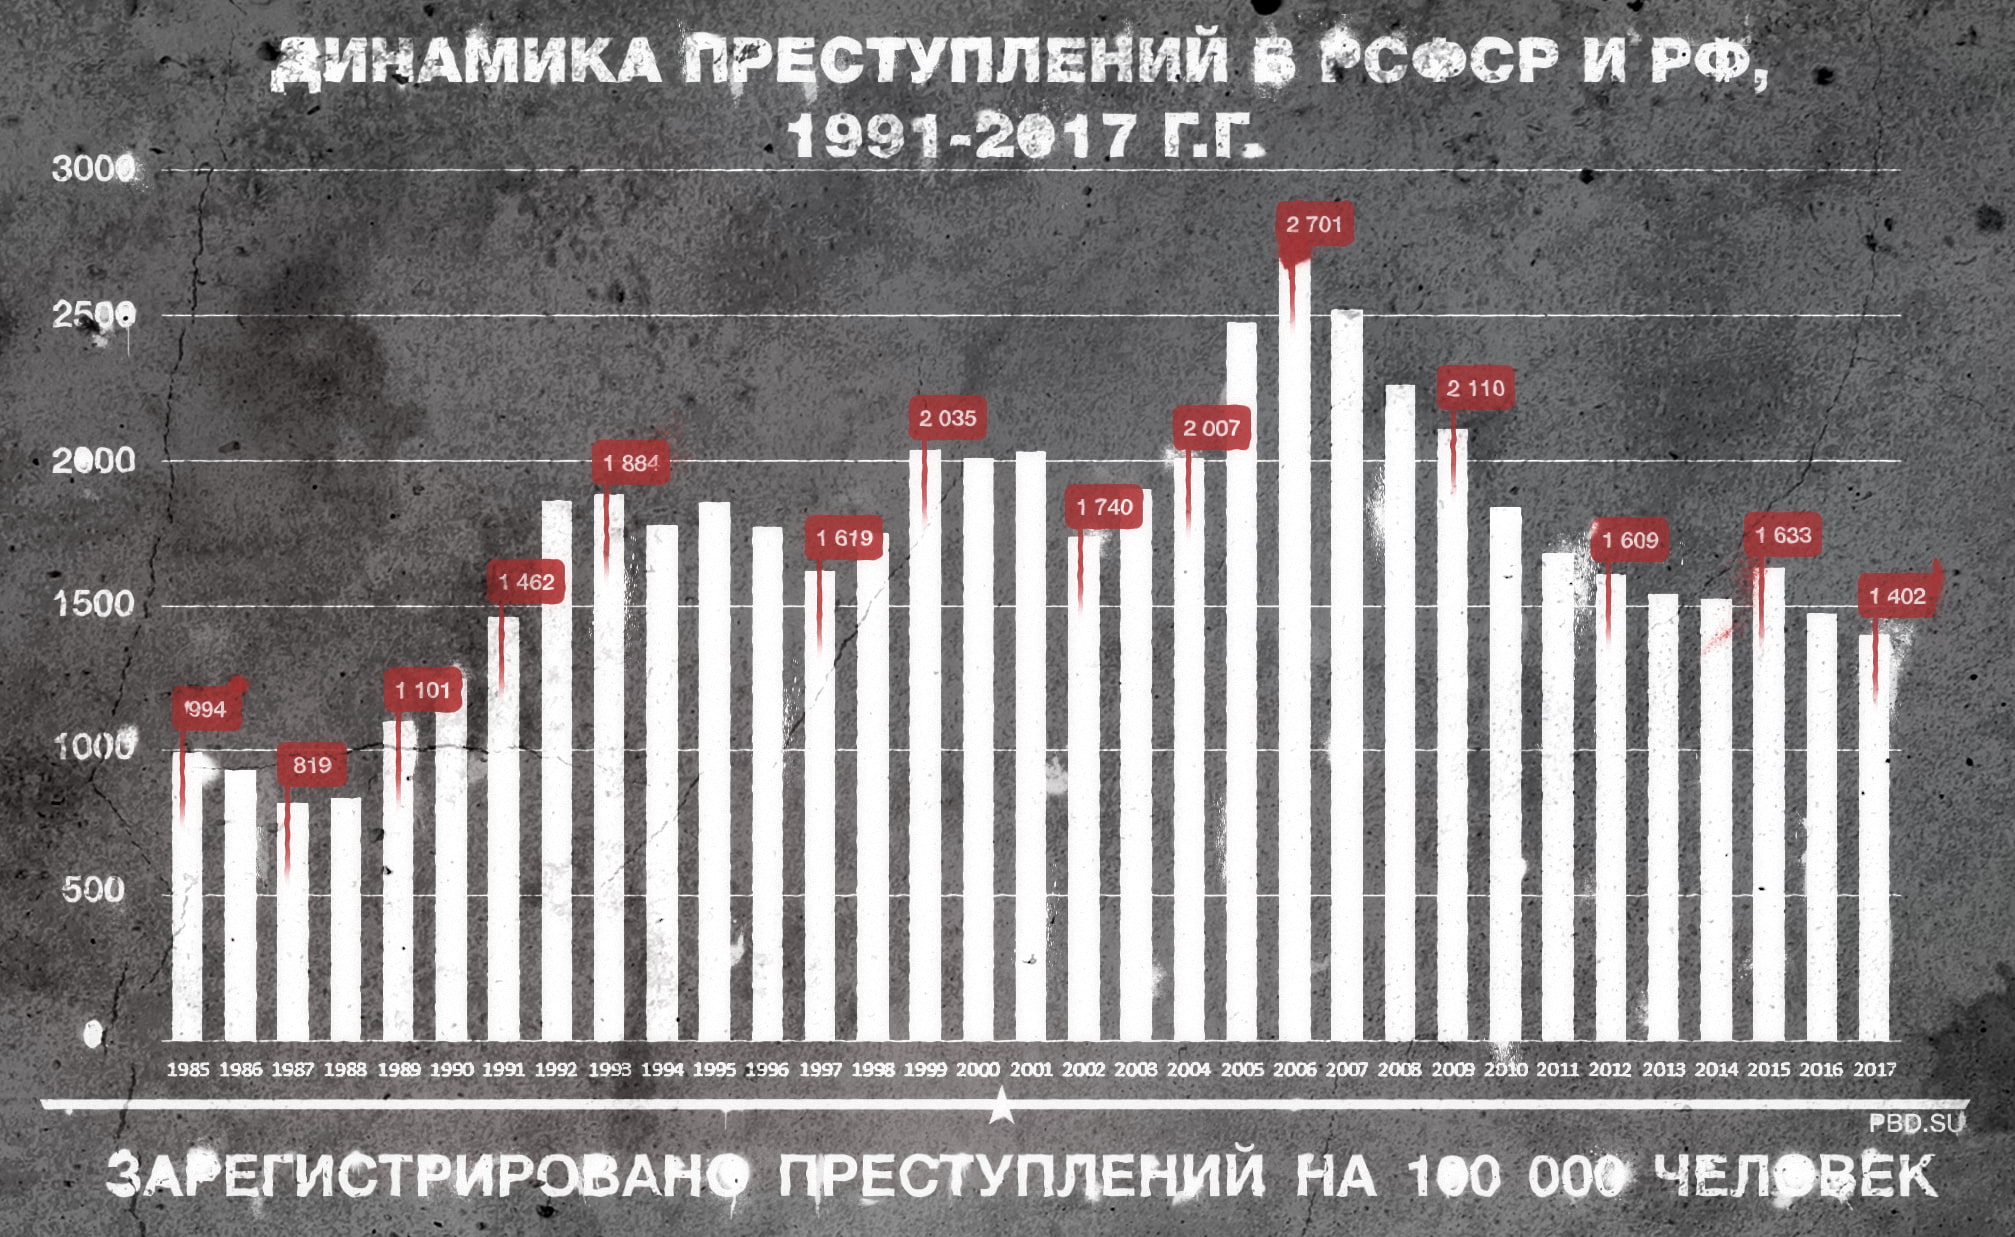 Уровень преступности в сша и россии в 2019-2020 годах — изучаем развернуто